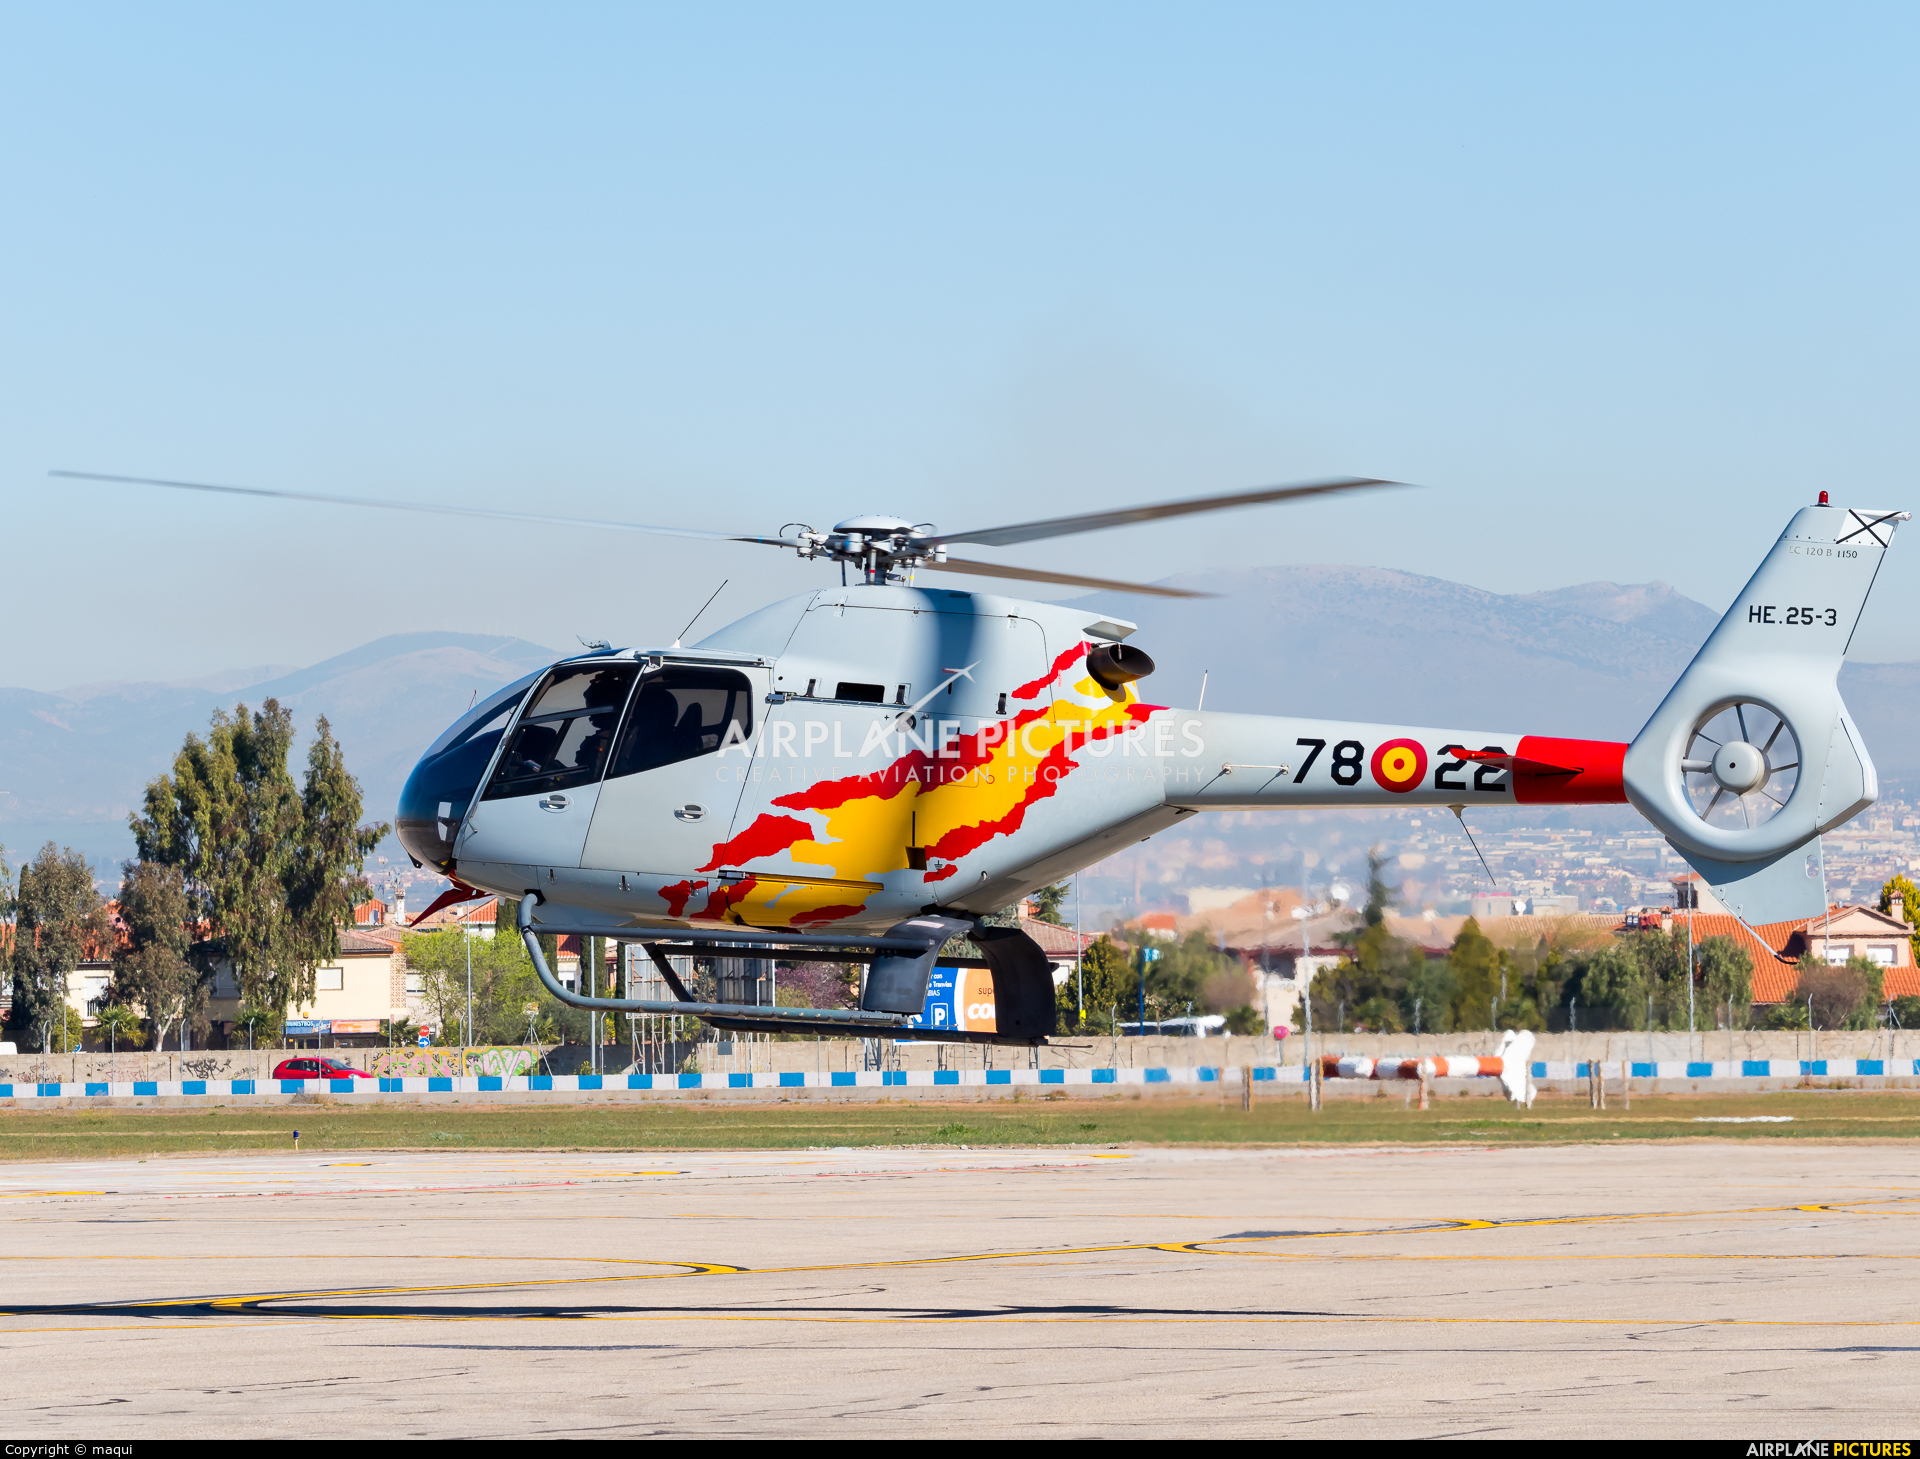 Spain - Air Force: Patrulla ASPA HE.25-3 aircraft at Granada - Armilla